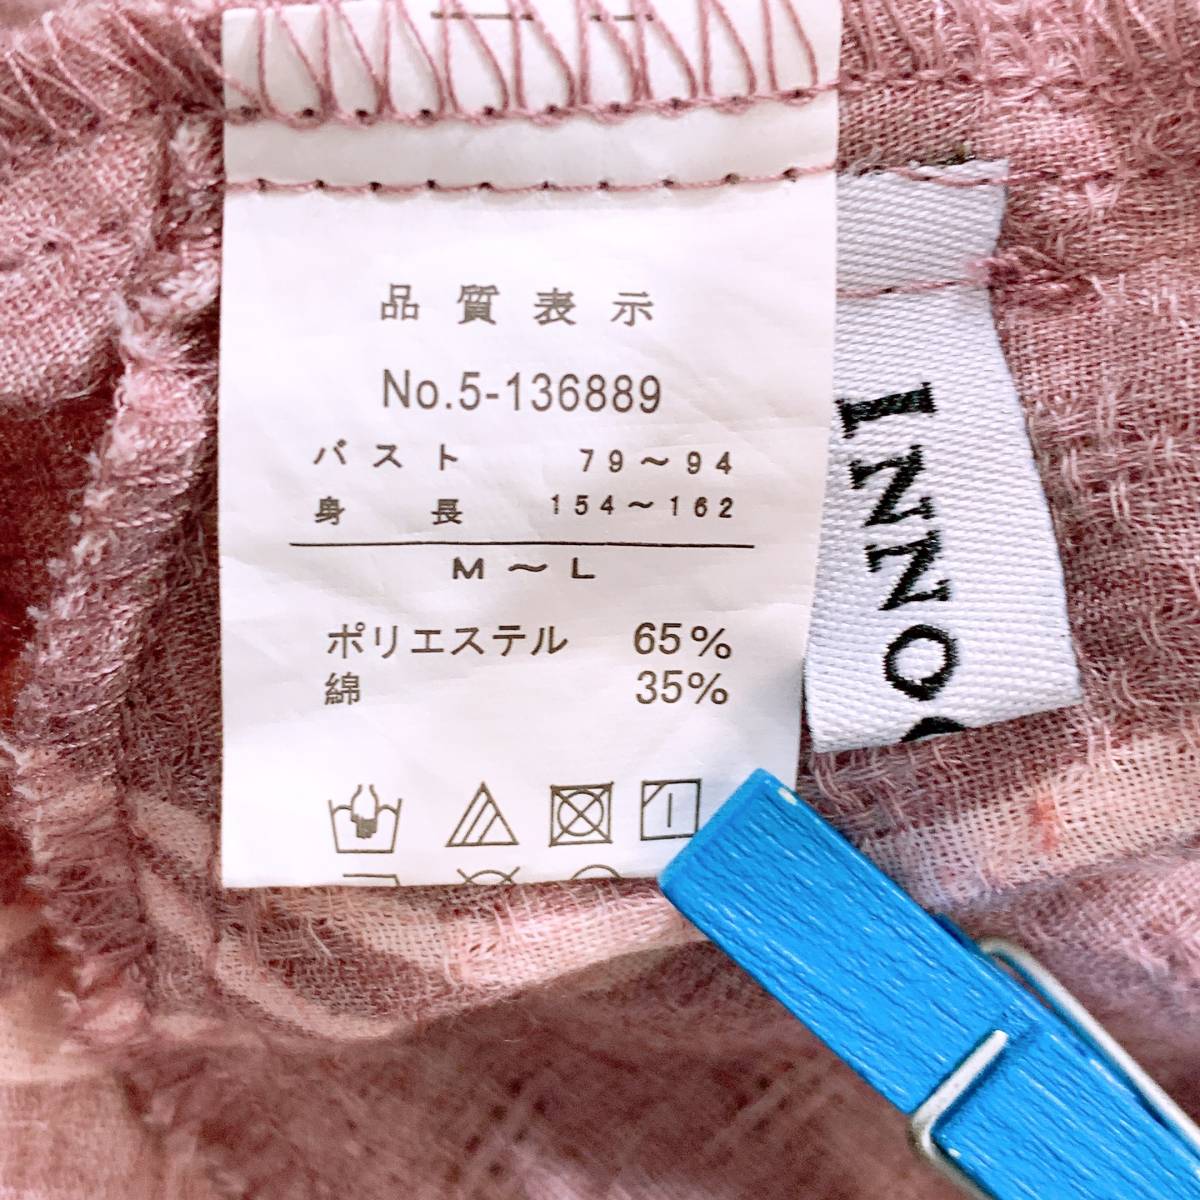 【11471】 美品 INNOCENTE イノセント 7分袖シャツ ワイド Aライン ゆったり オーバーサイズ 裾広がり M-L パステルパープル 薄紫